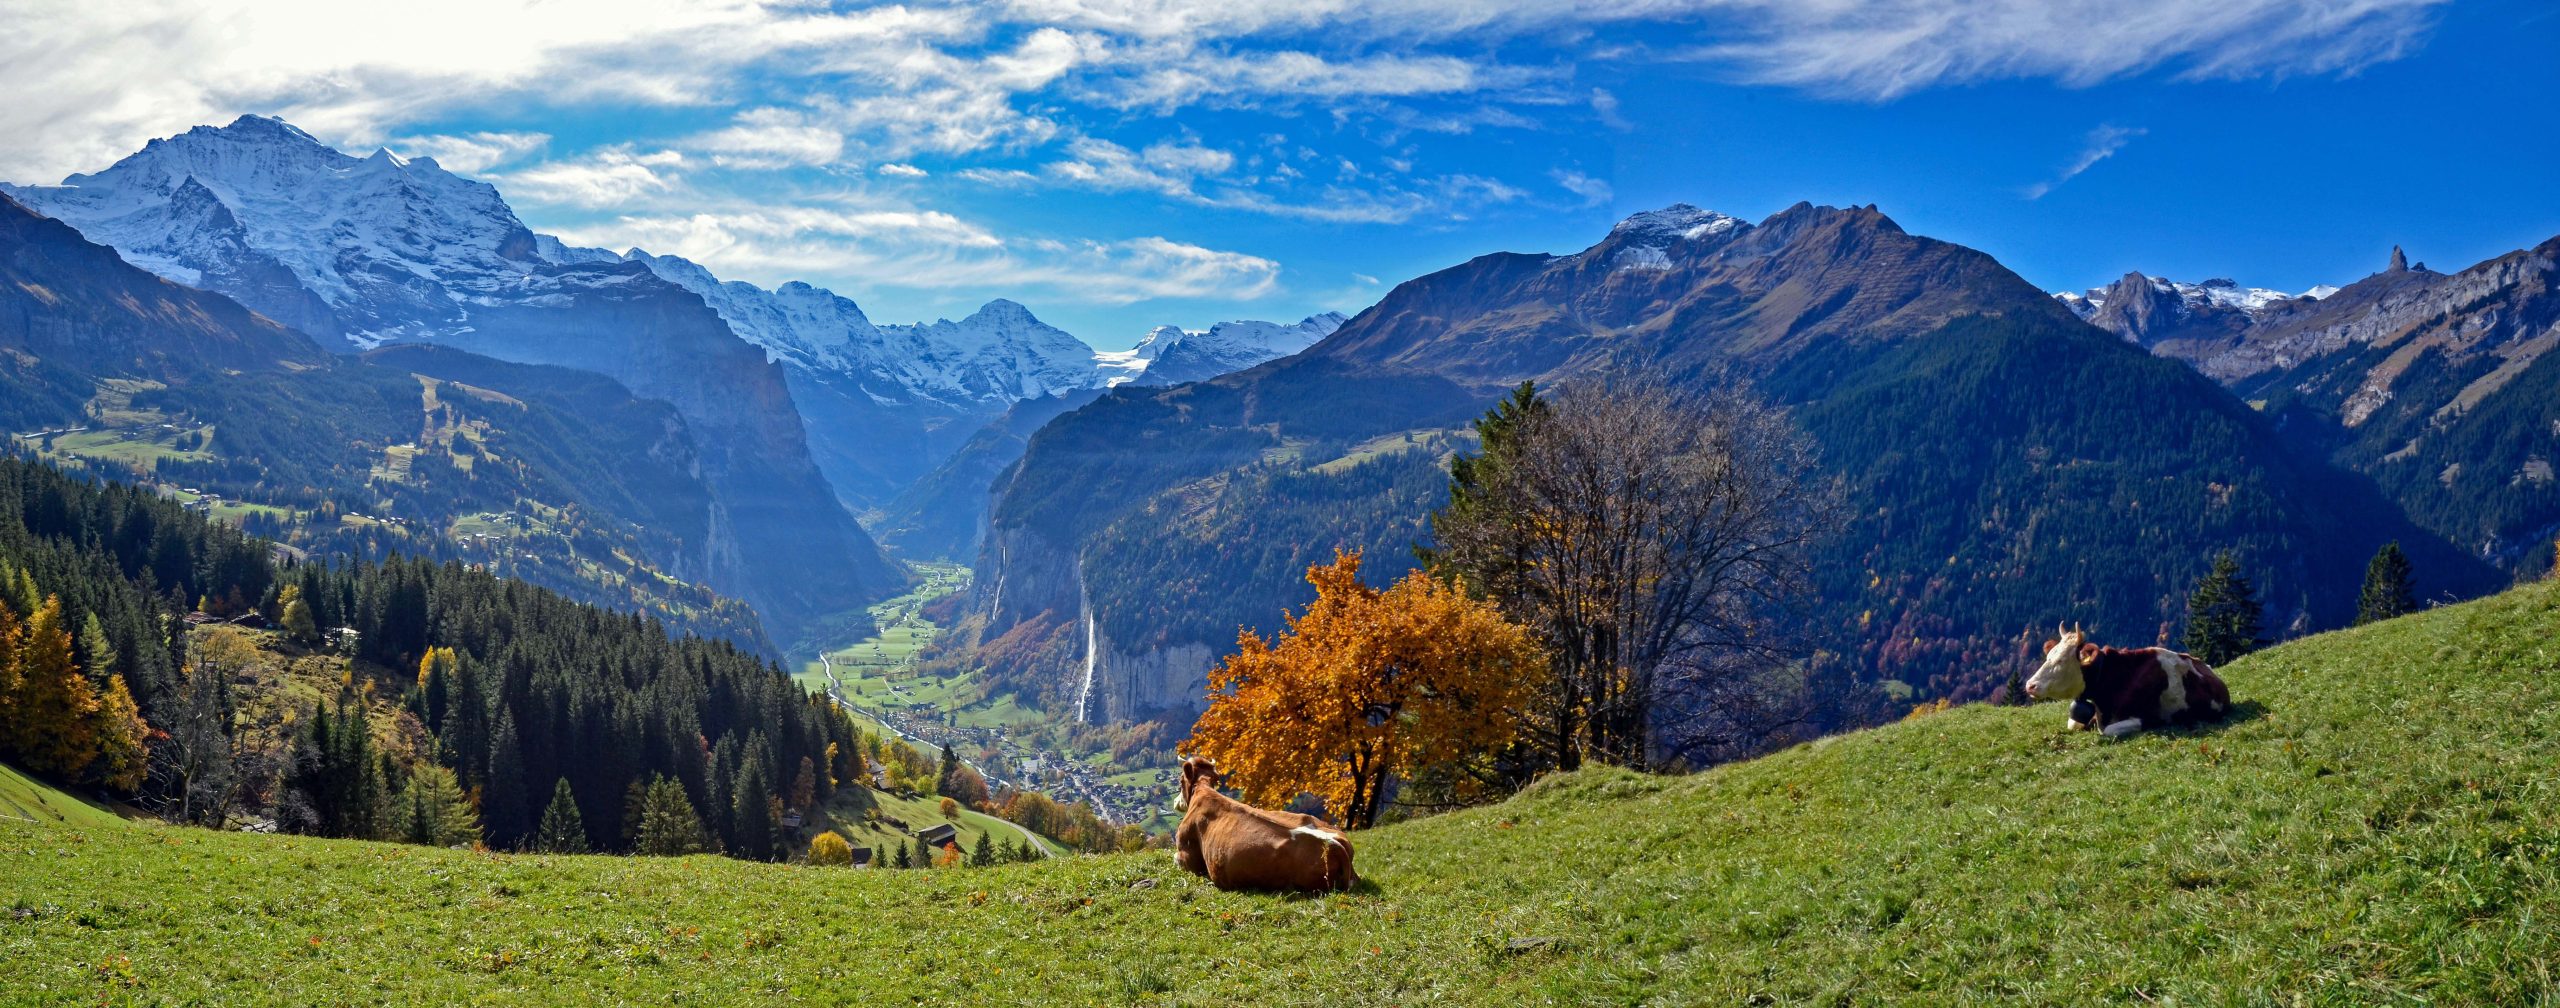 via-alpina-walking-swiss-alps(5)